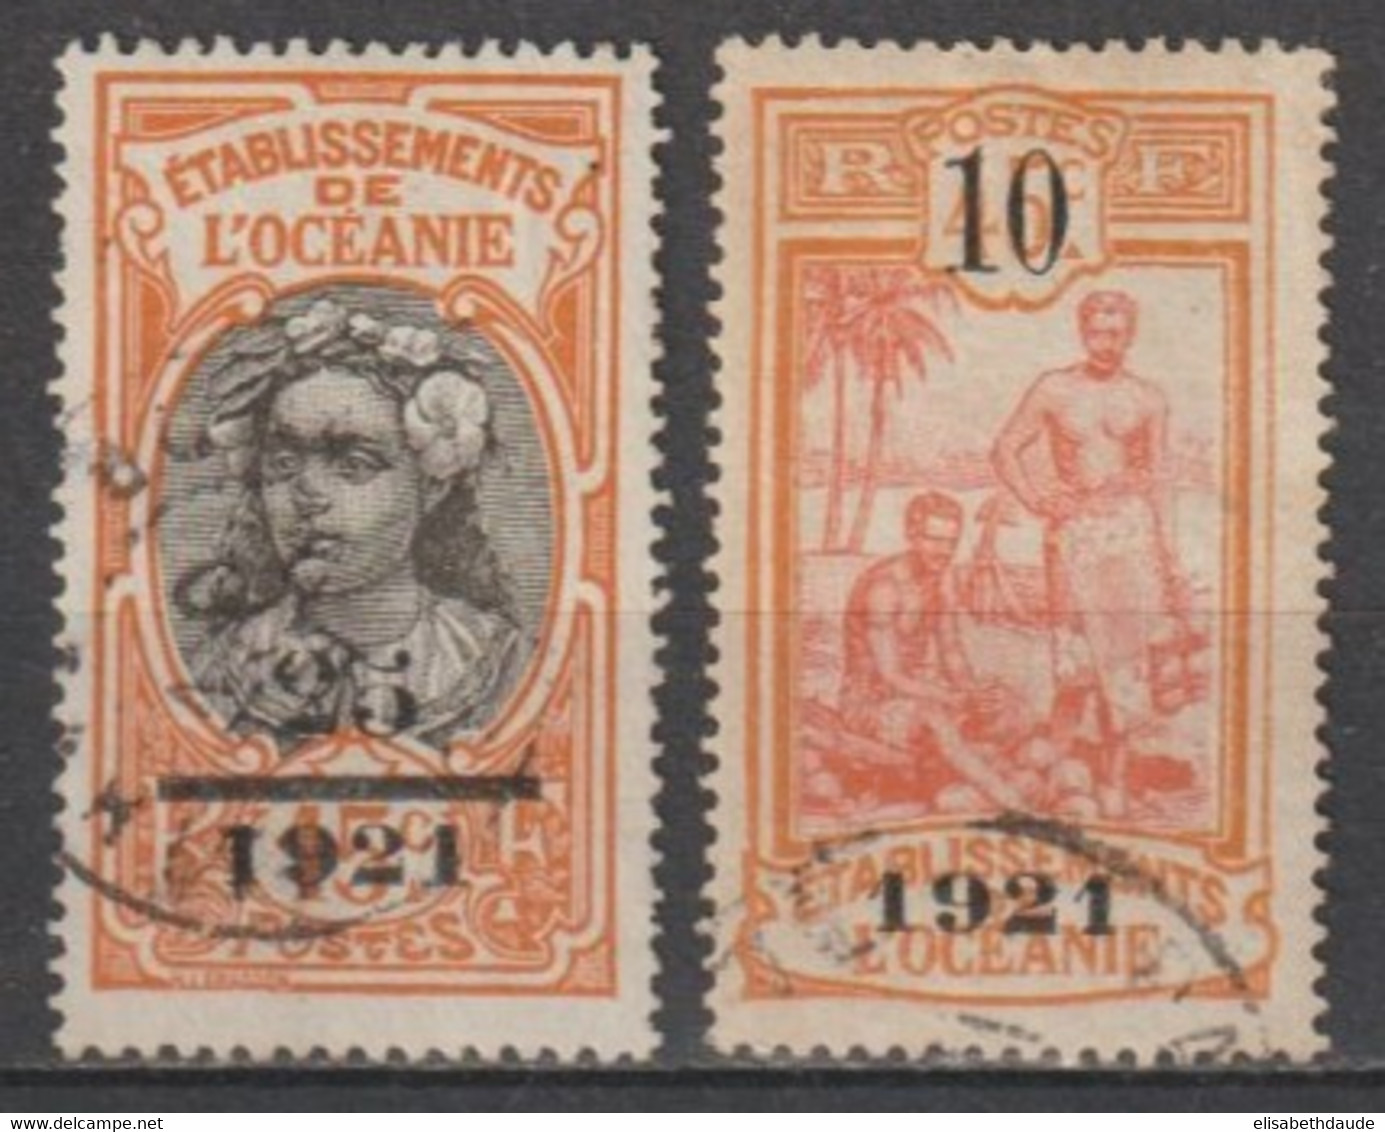 OCEANIE - 1921 - YVERT N°45/46 OBLITERES - COTE = 90 EUR - Gebraucht